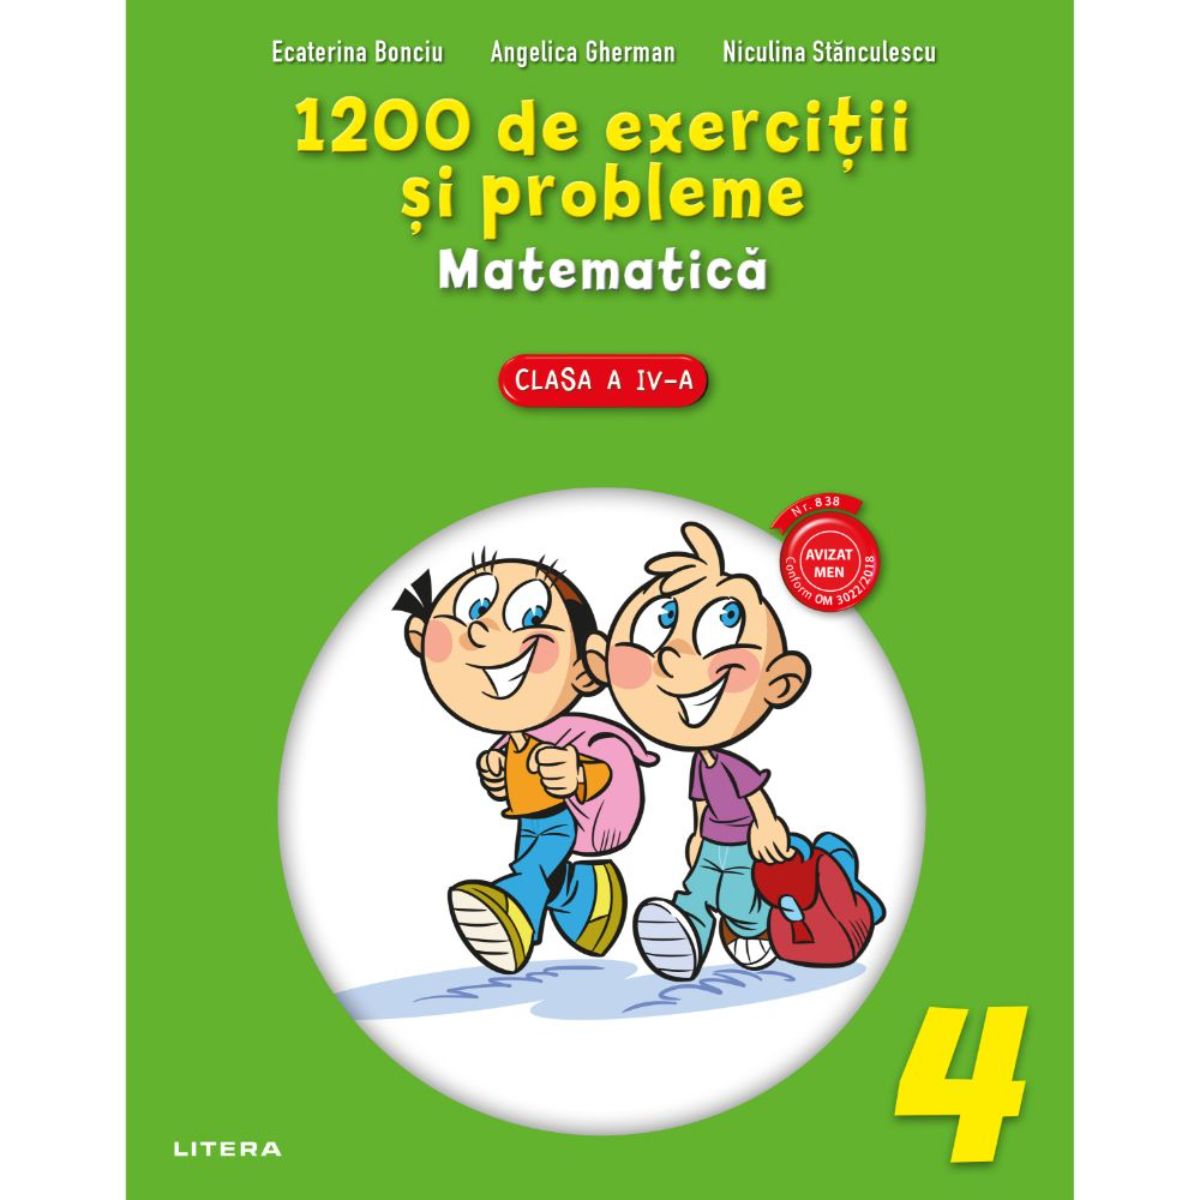 Poze 1200 de exercitii si probleme de matematica, Clasa a IV-a